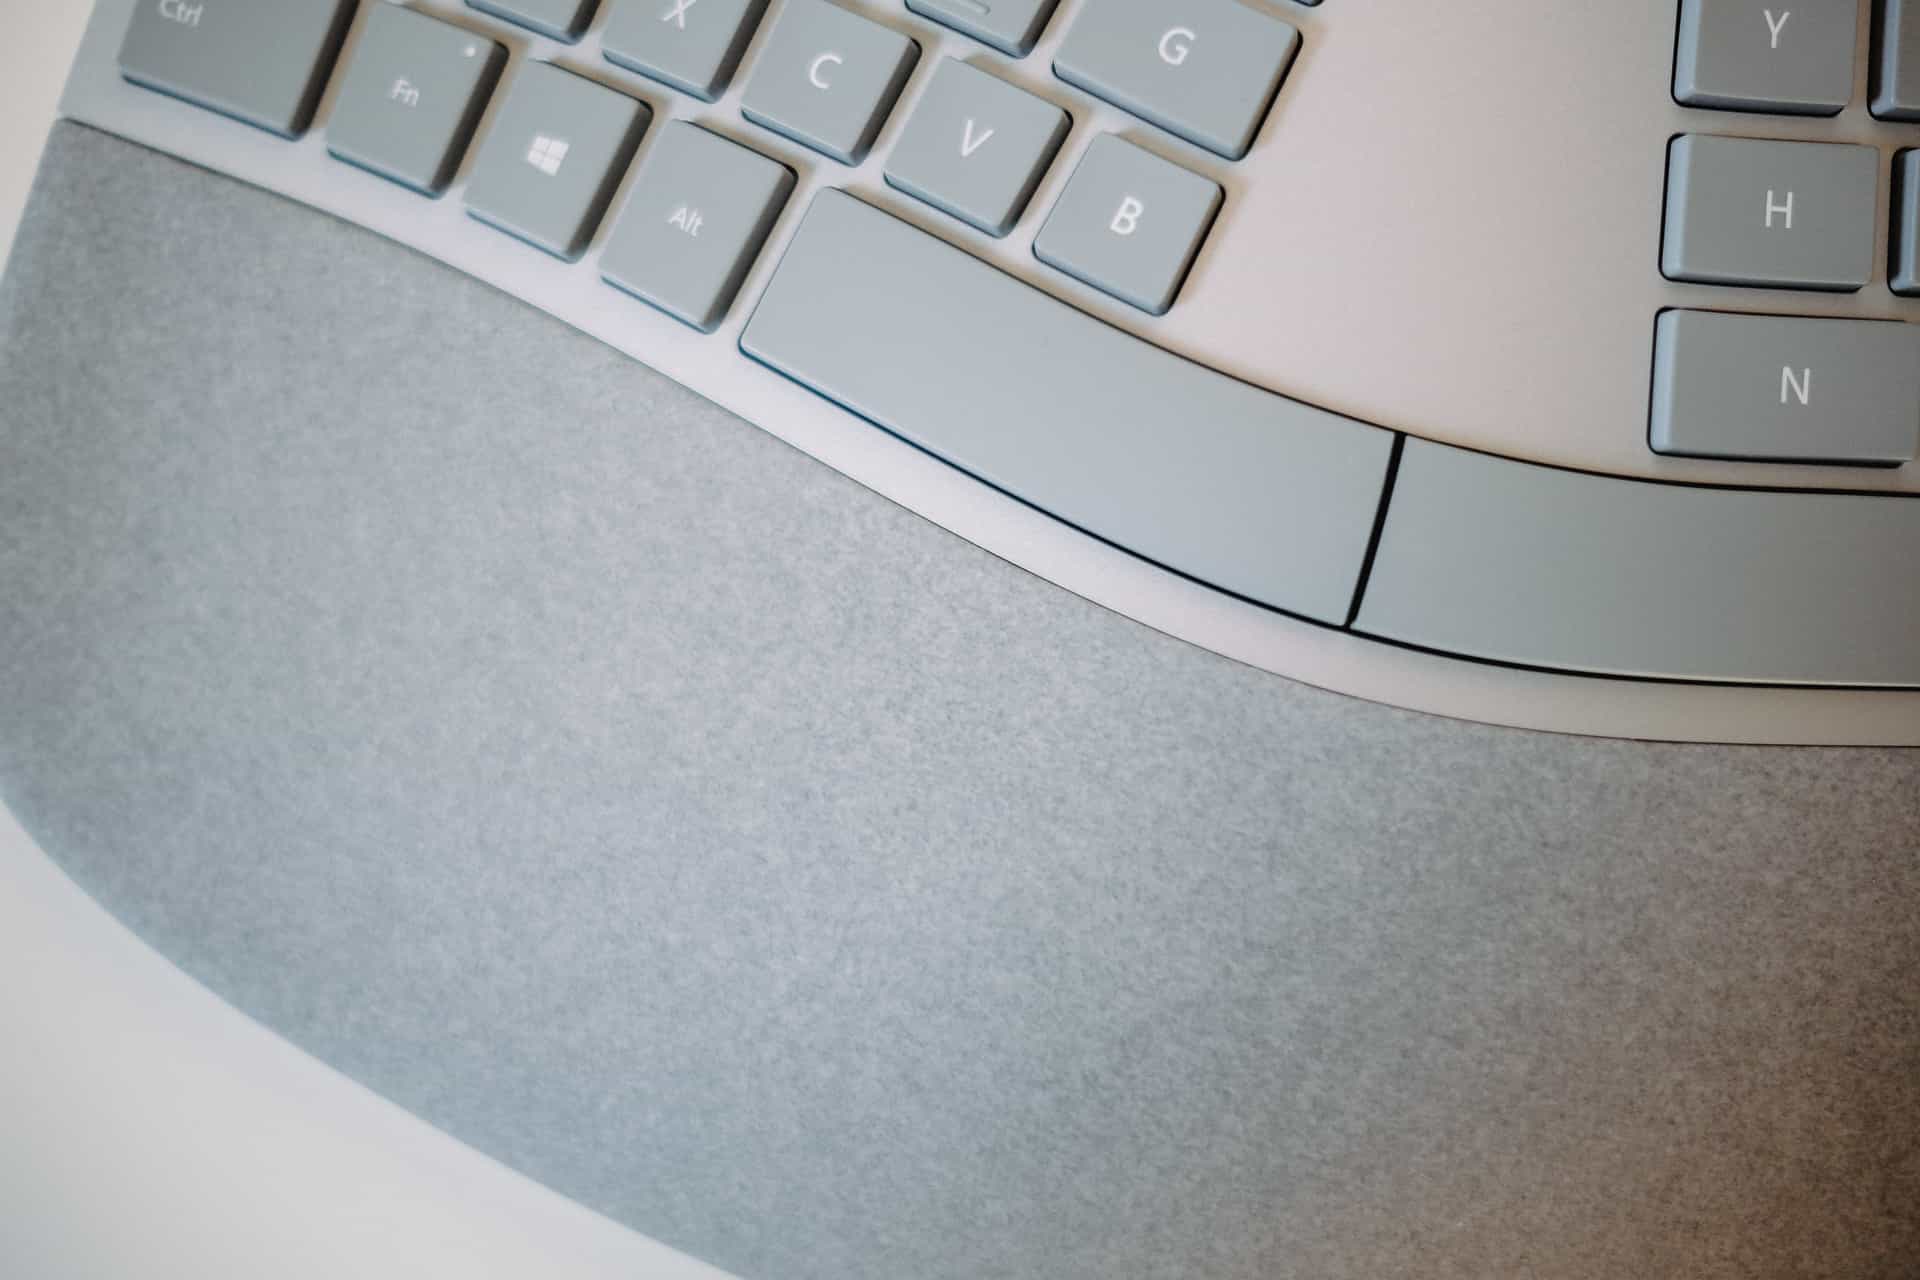 microsoft ergonomic keyboard settings for mac